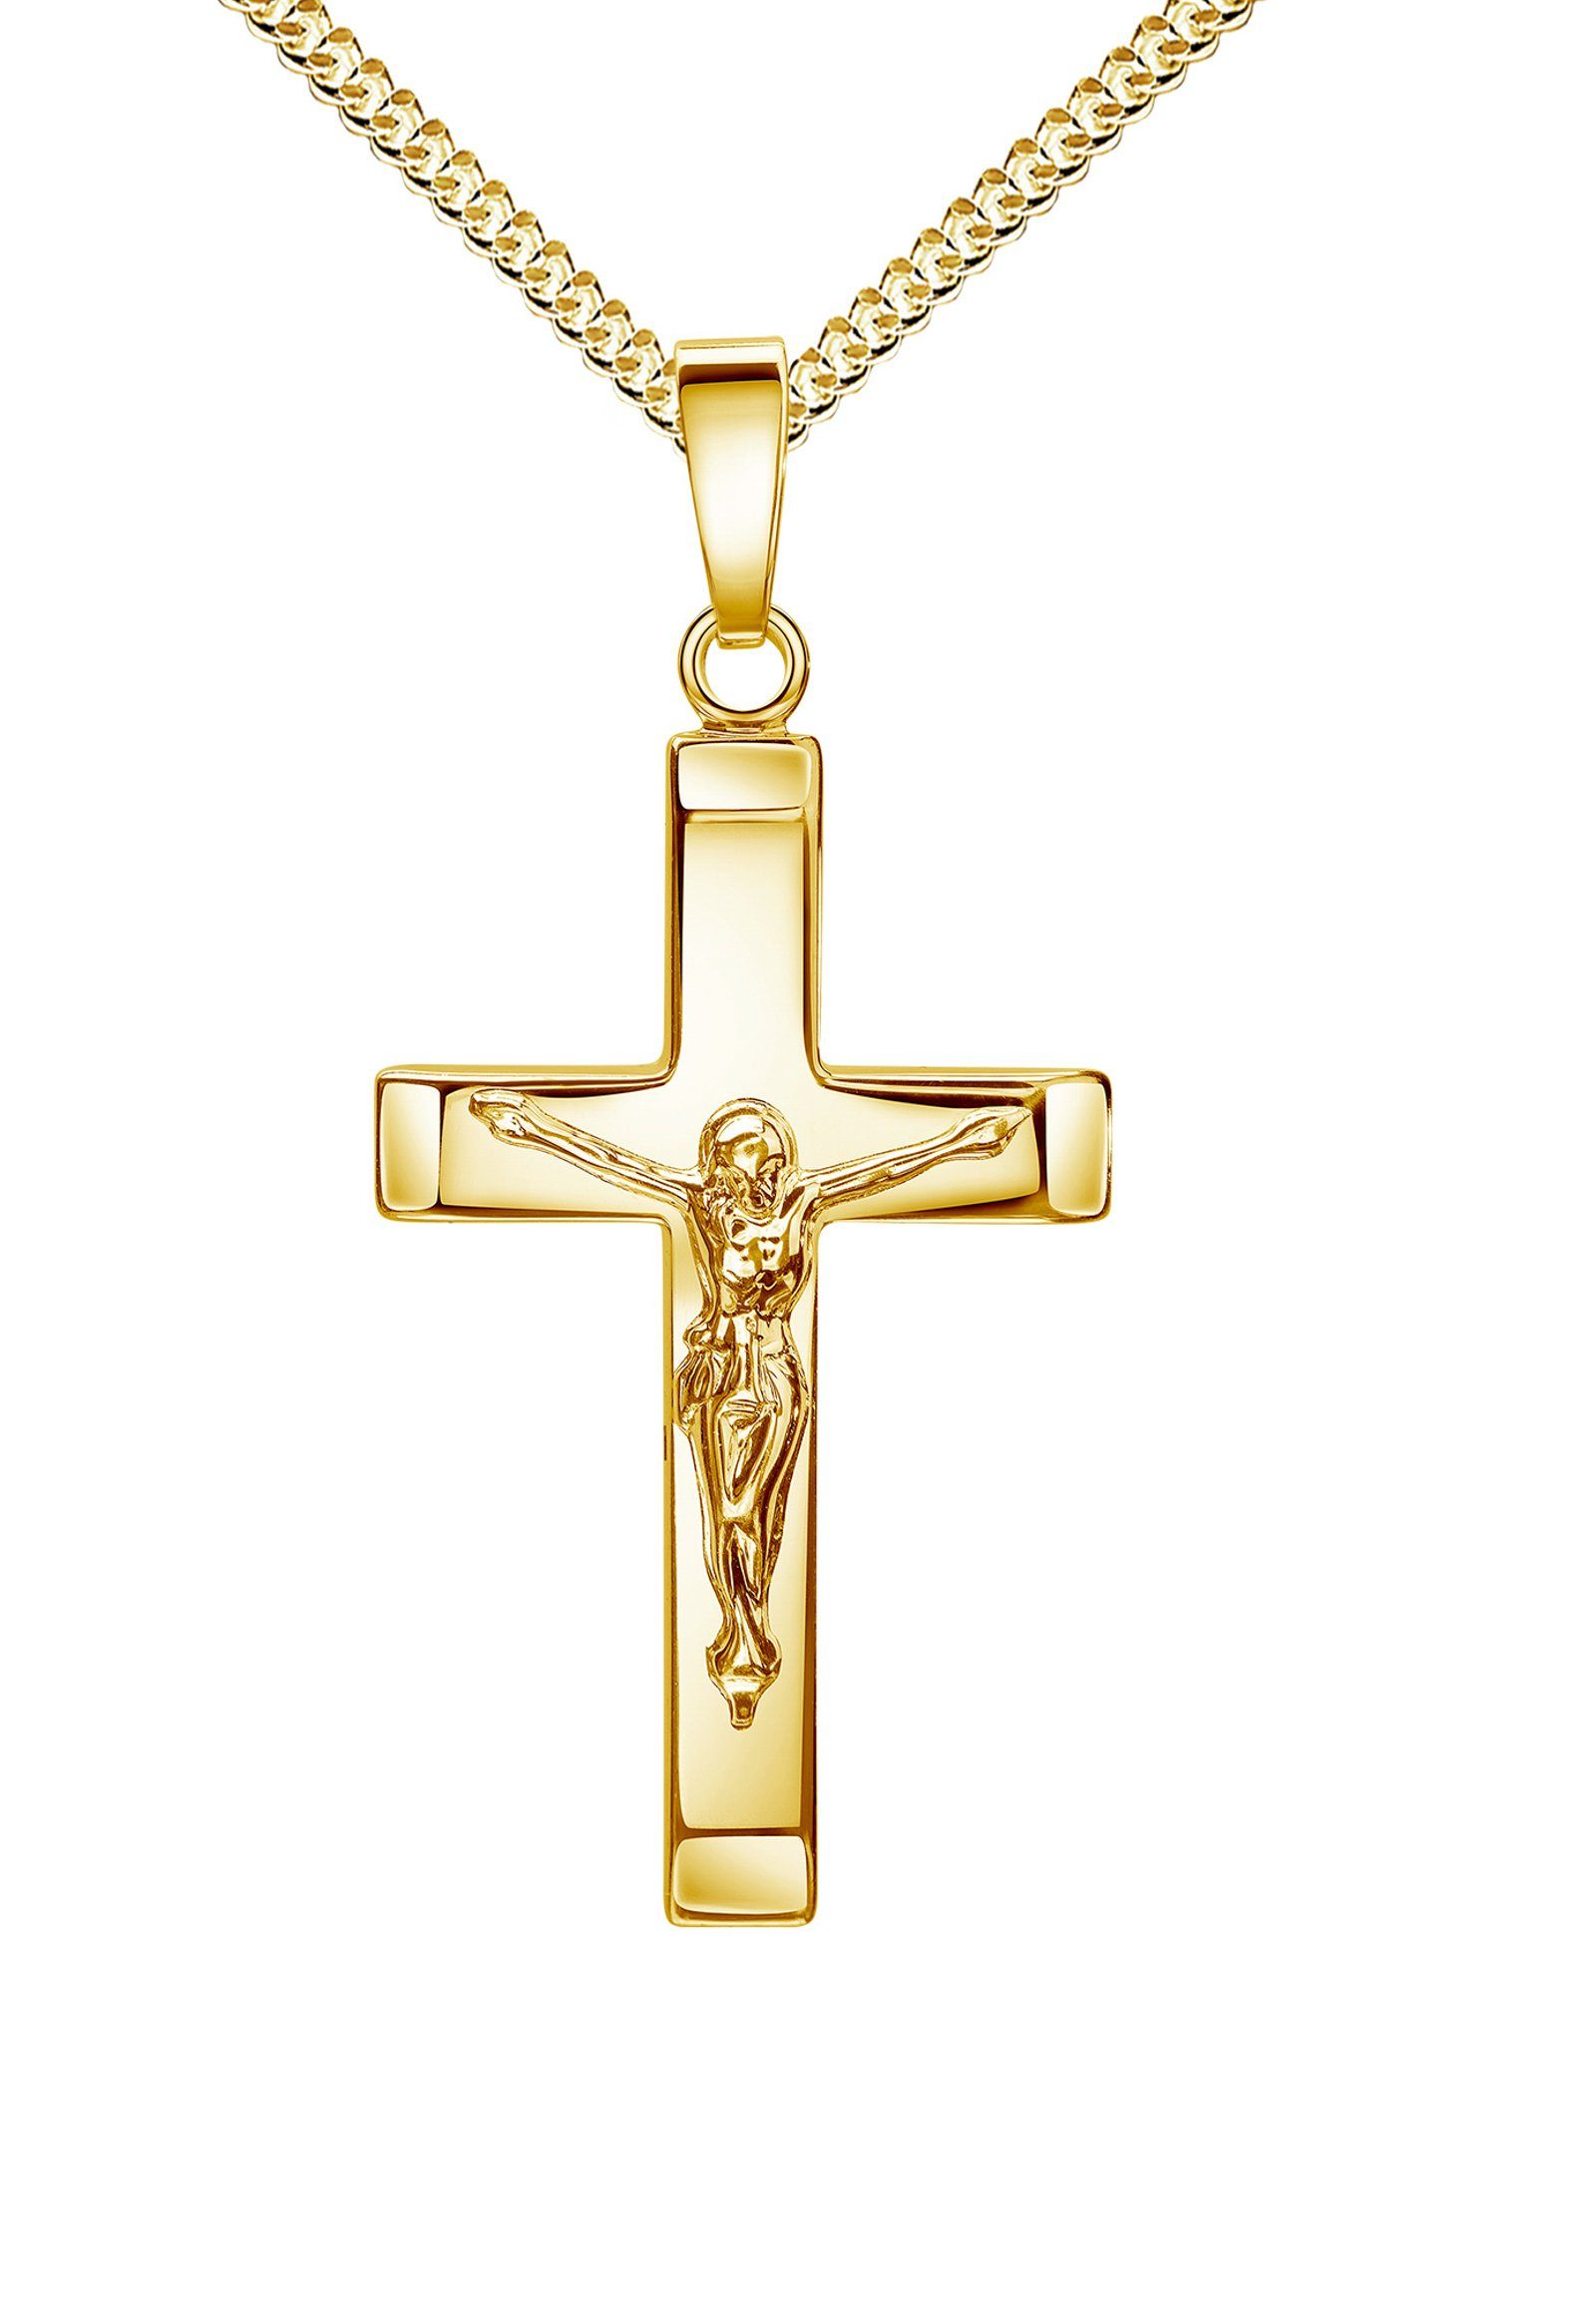 JEVELION Kreuzkette Kruzifix 925 Silber vergoldet - Made in Germany (Silberkreuz vergoldet, für Damen und Herren), Kreuzanhänger mit Panzer-Kette - Länge wählbar 36 - 70 cm.